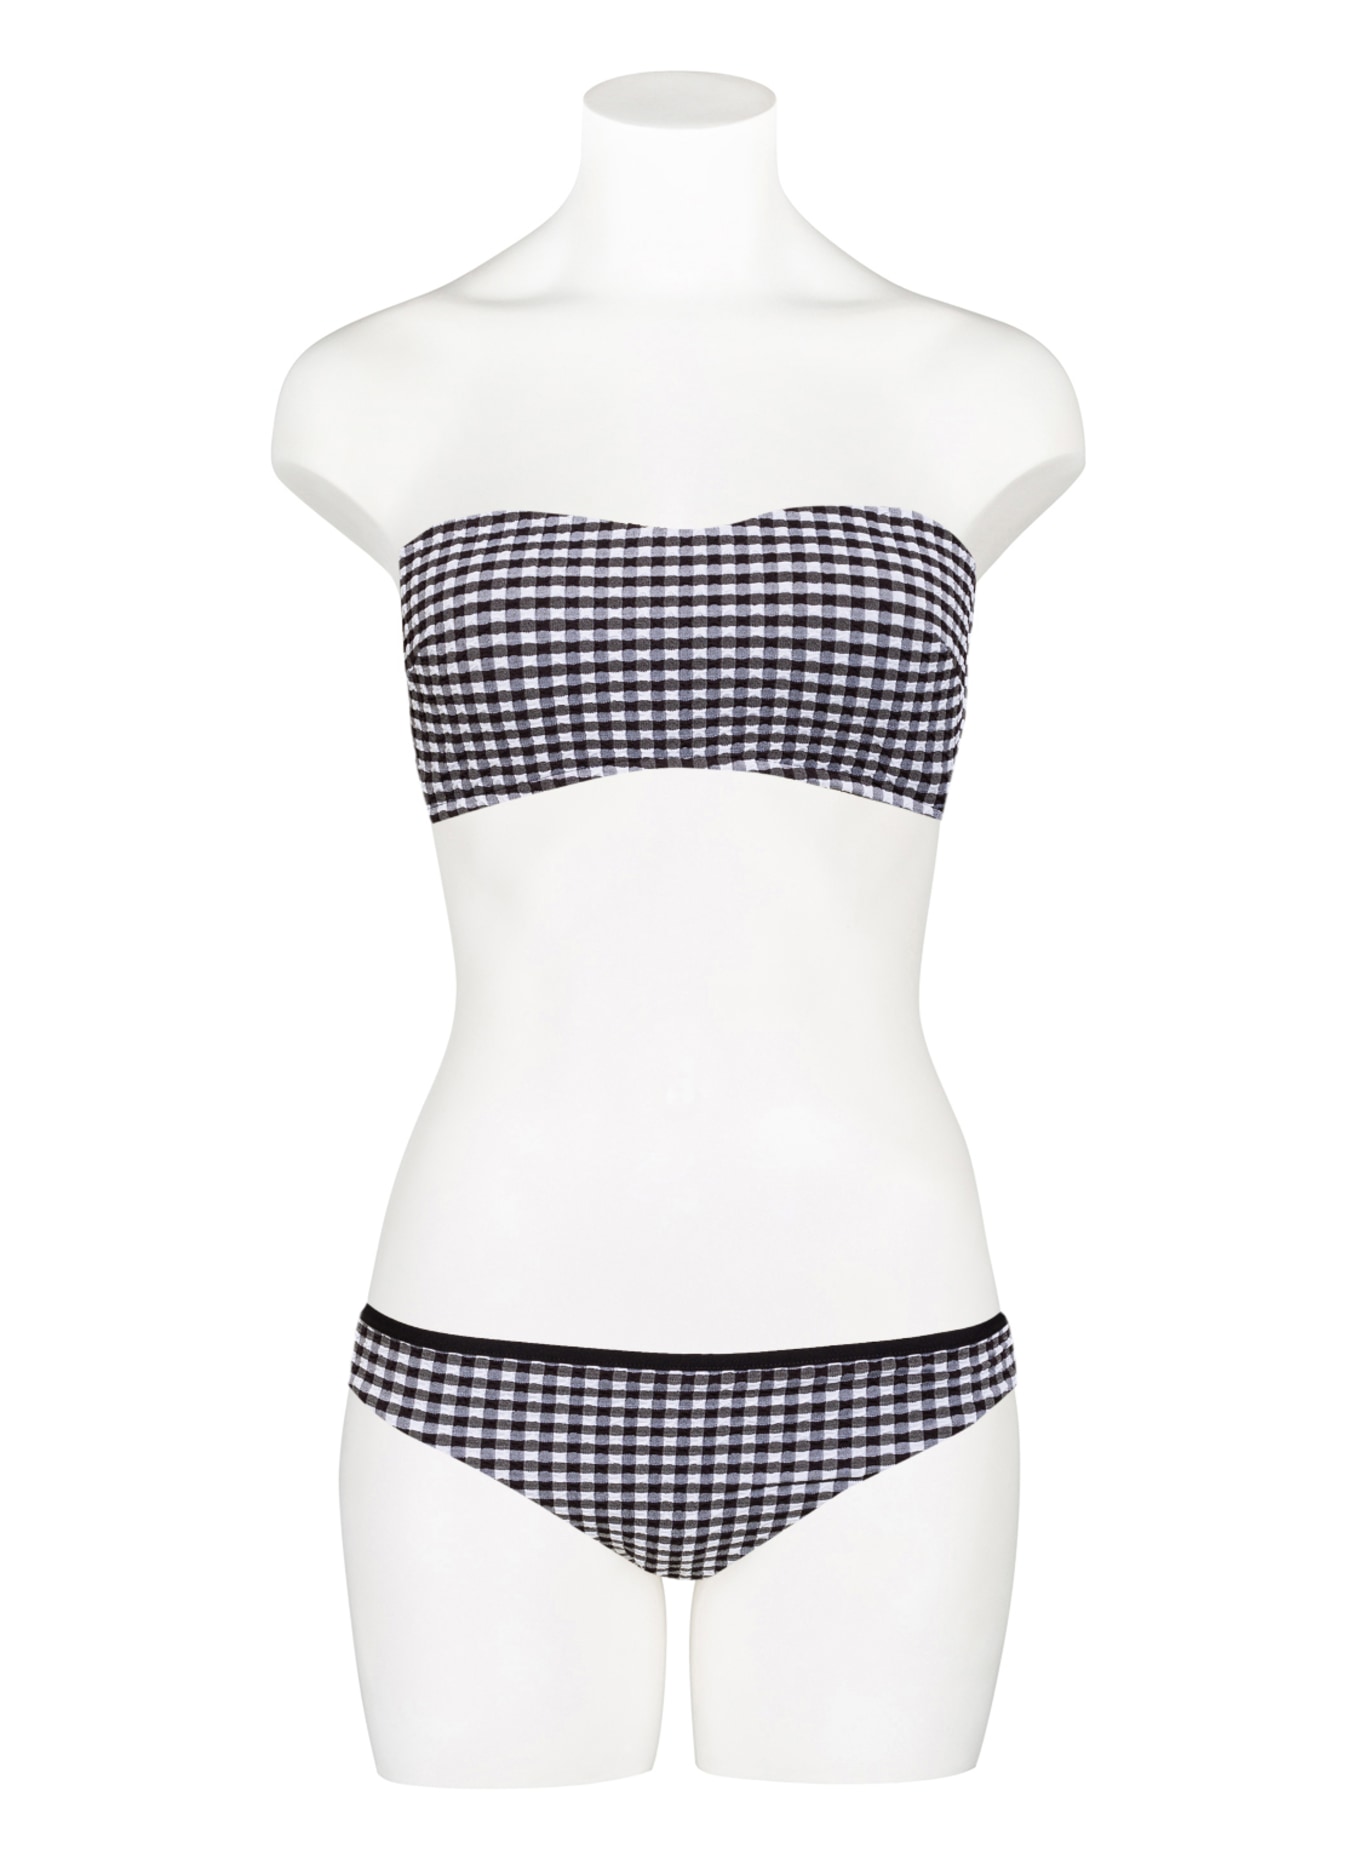 SEAFOLLY Bikini bottoms CHECK IN, Color: BLACK/ WHITE (Image 2)